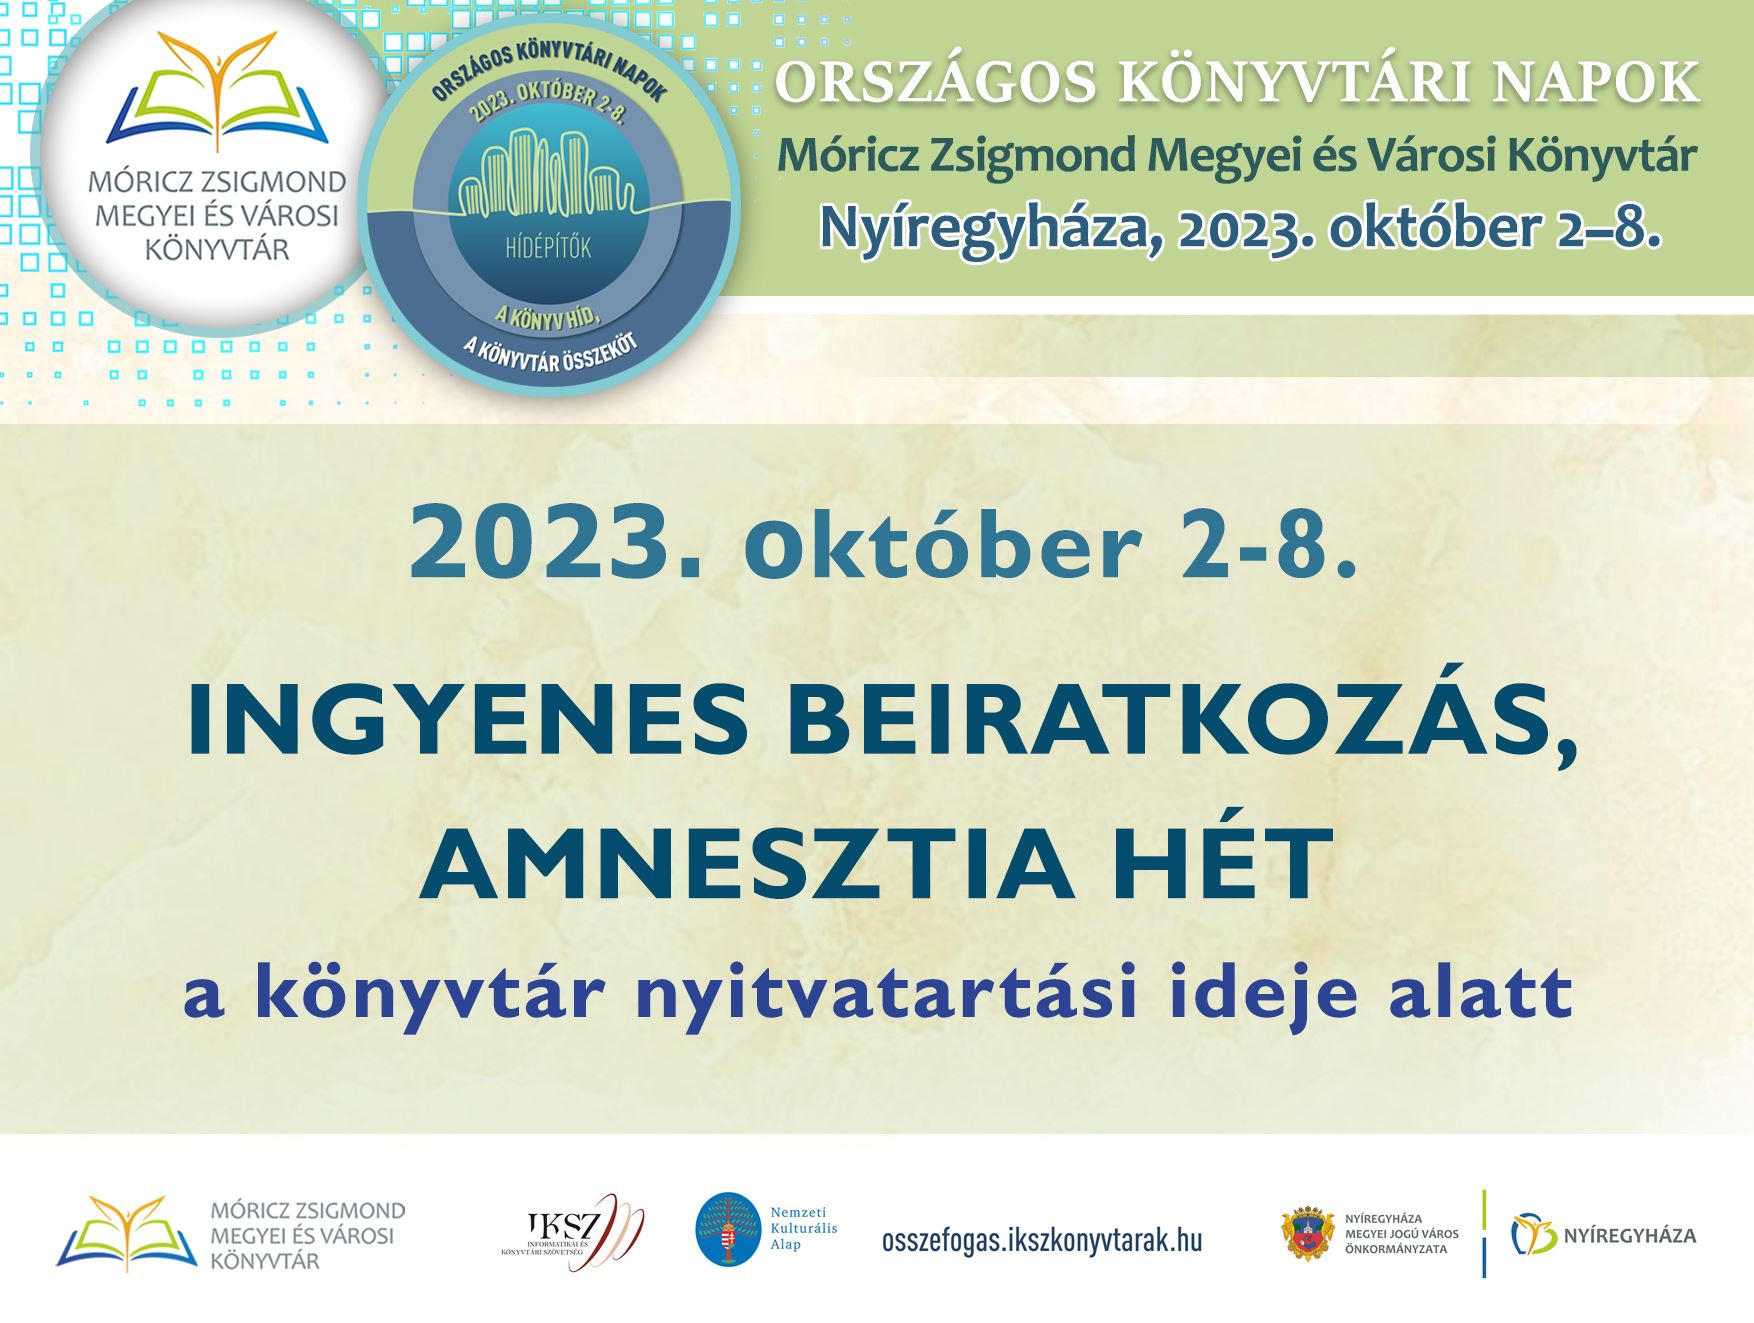 OKN 2023_Ingyenes és amnesztia_plakát